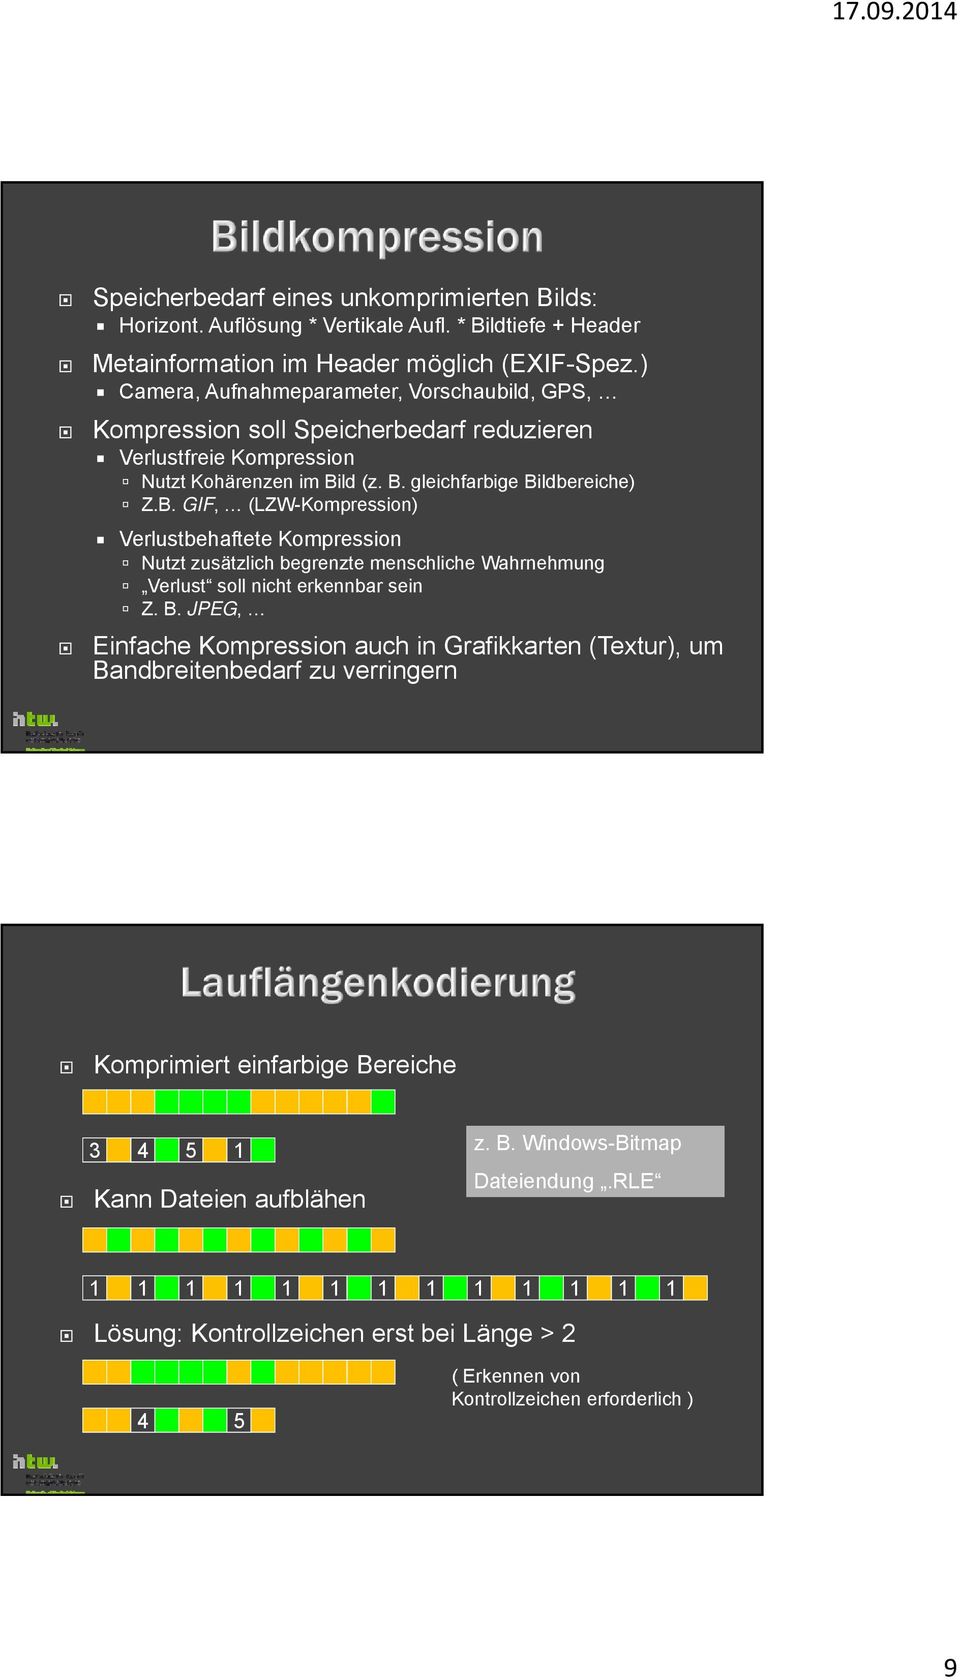 ld (z. B. gleichfarbige Bildbereiche) Z.B. GIF, (LZW-Kompression) Verlustbehaftete Kompression Nutzt zusätzlich begrenzte menschliche Wahrnehmung Verlust soll nicht erkennbar sein Z. B. JPEG, Einfache Kompression auch in Grafikkarten (Textur), um Bandbreitenbedarf zu verringern Komprimiert einfarbige Bereiche 3 4 5 1 Kann Dateien aufblähen z.